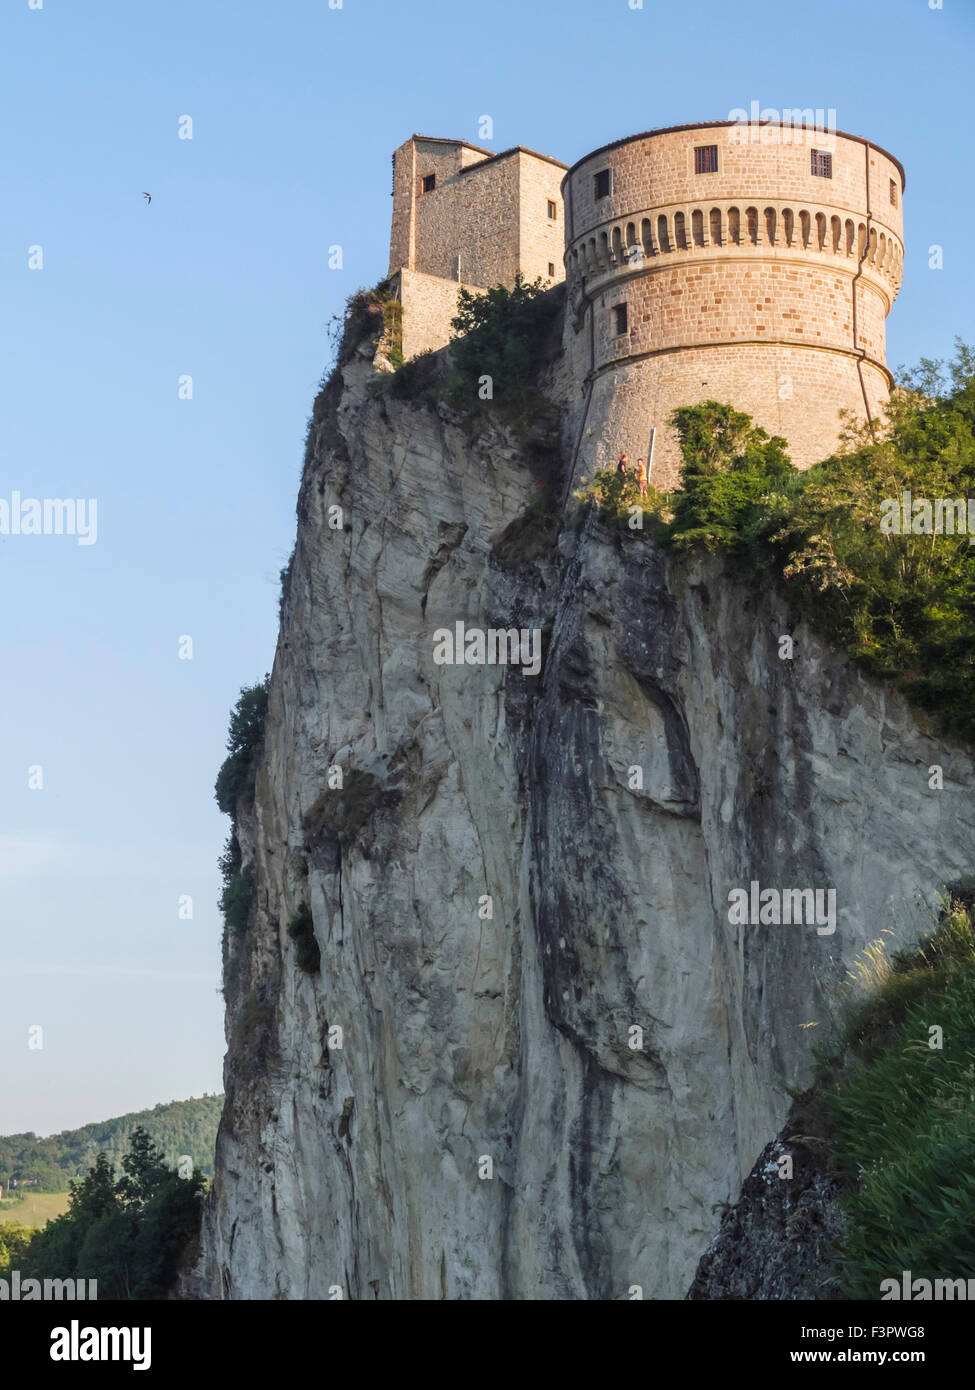 Italy, Emilia-Romagna, Urbino - the Fortezza on the Rocca, castle on the rock. Stock Photo